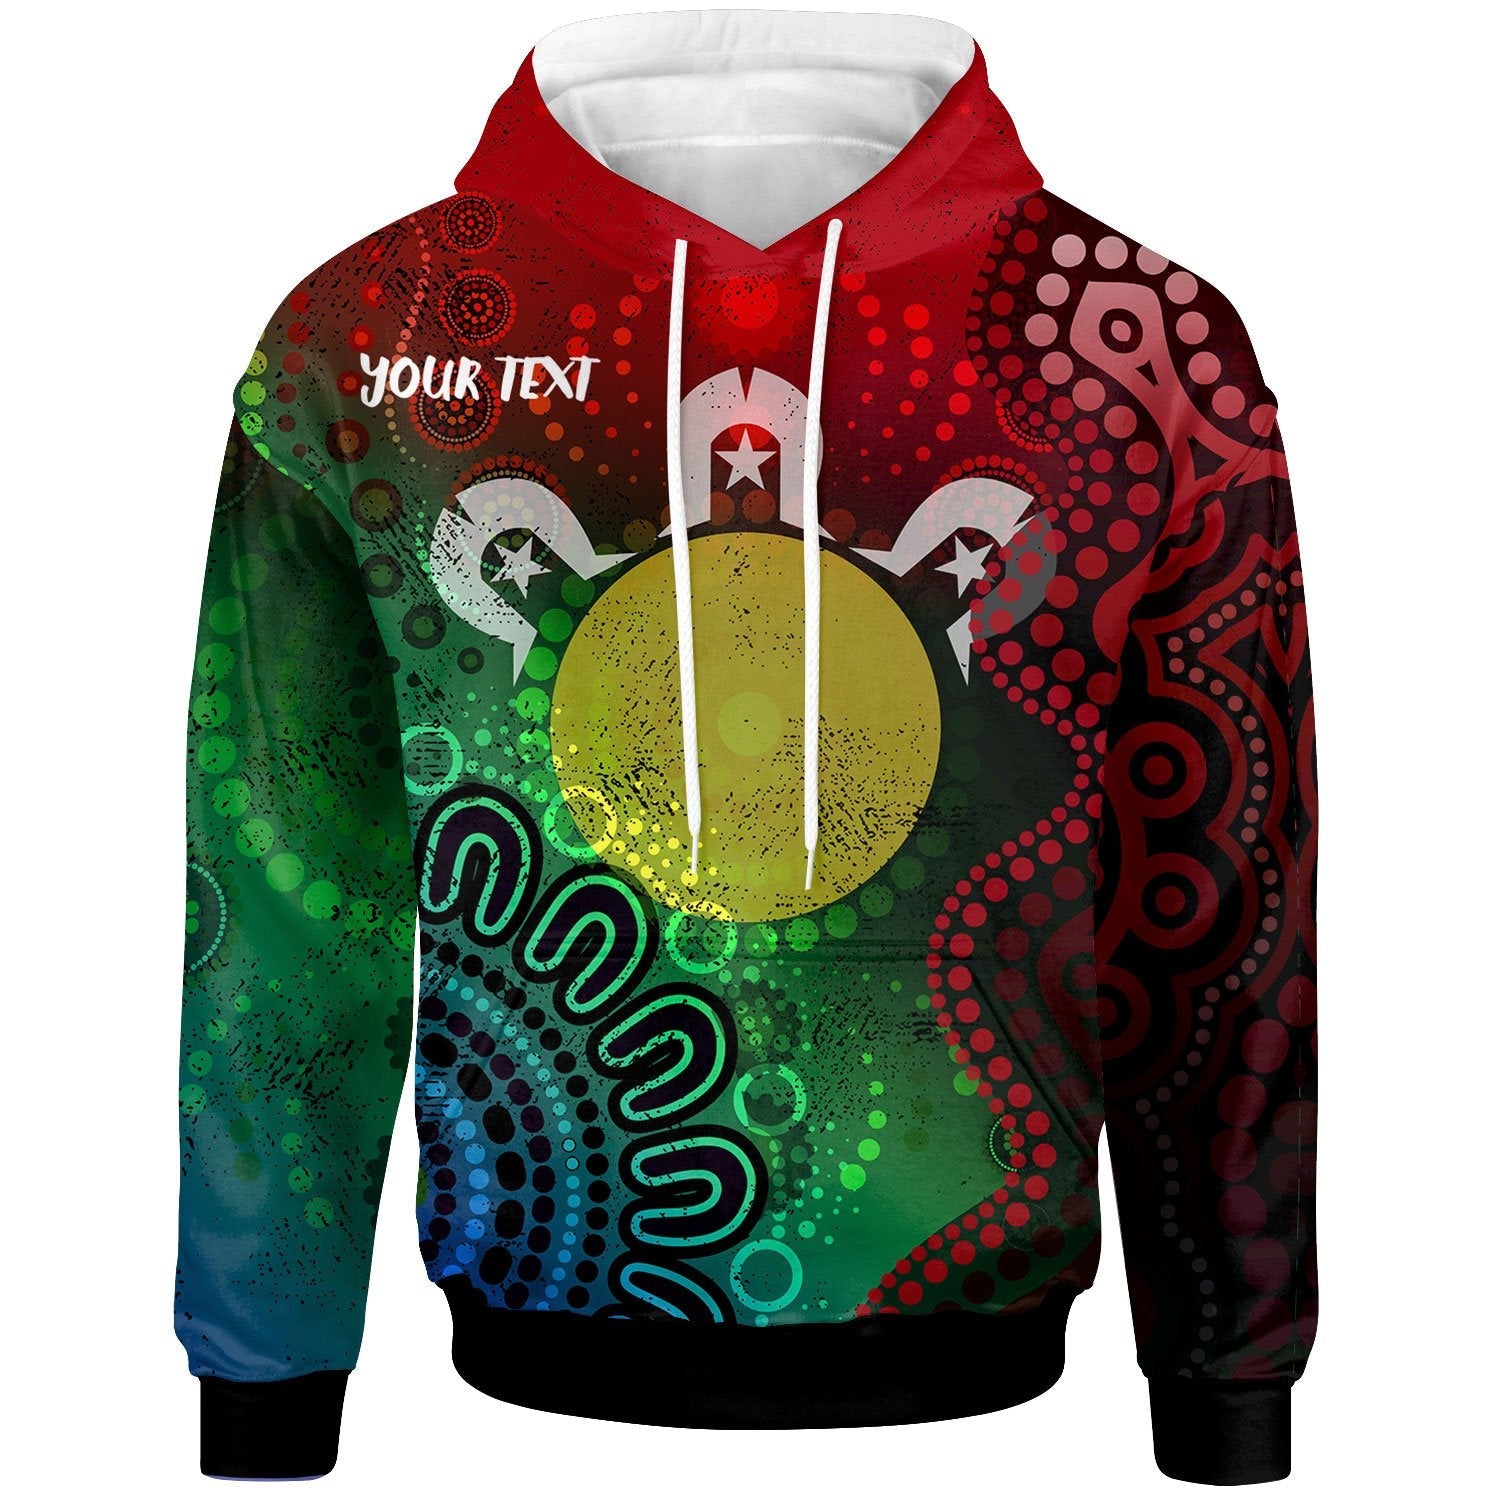 naidoc-week-personalised-hoodie-inspiration-of-indigenous-art